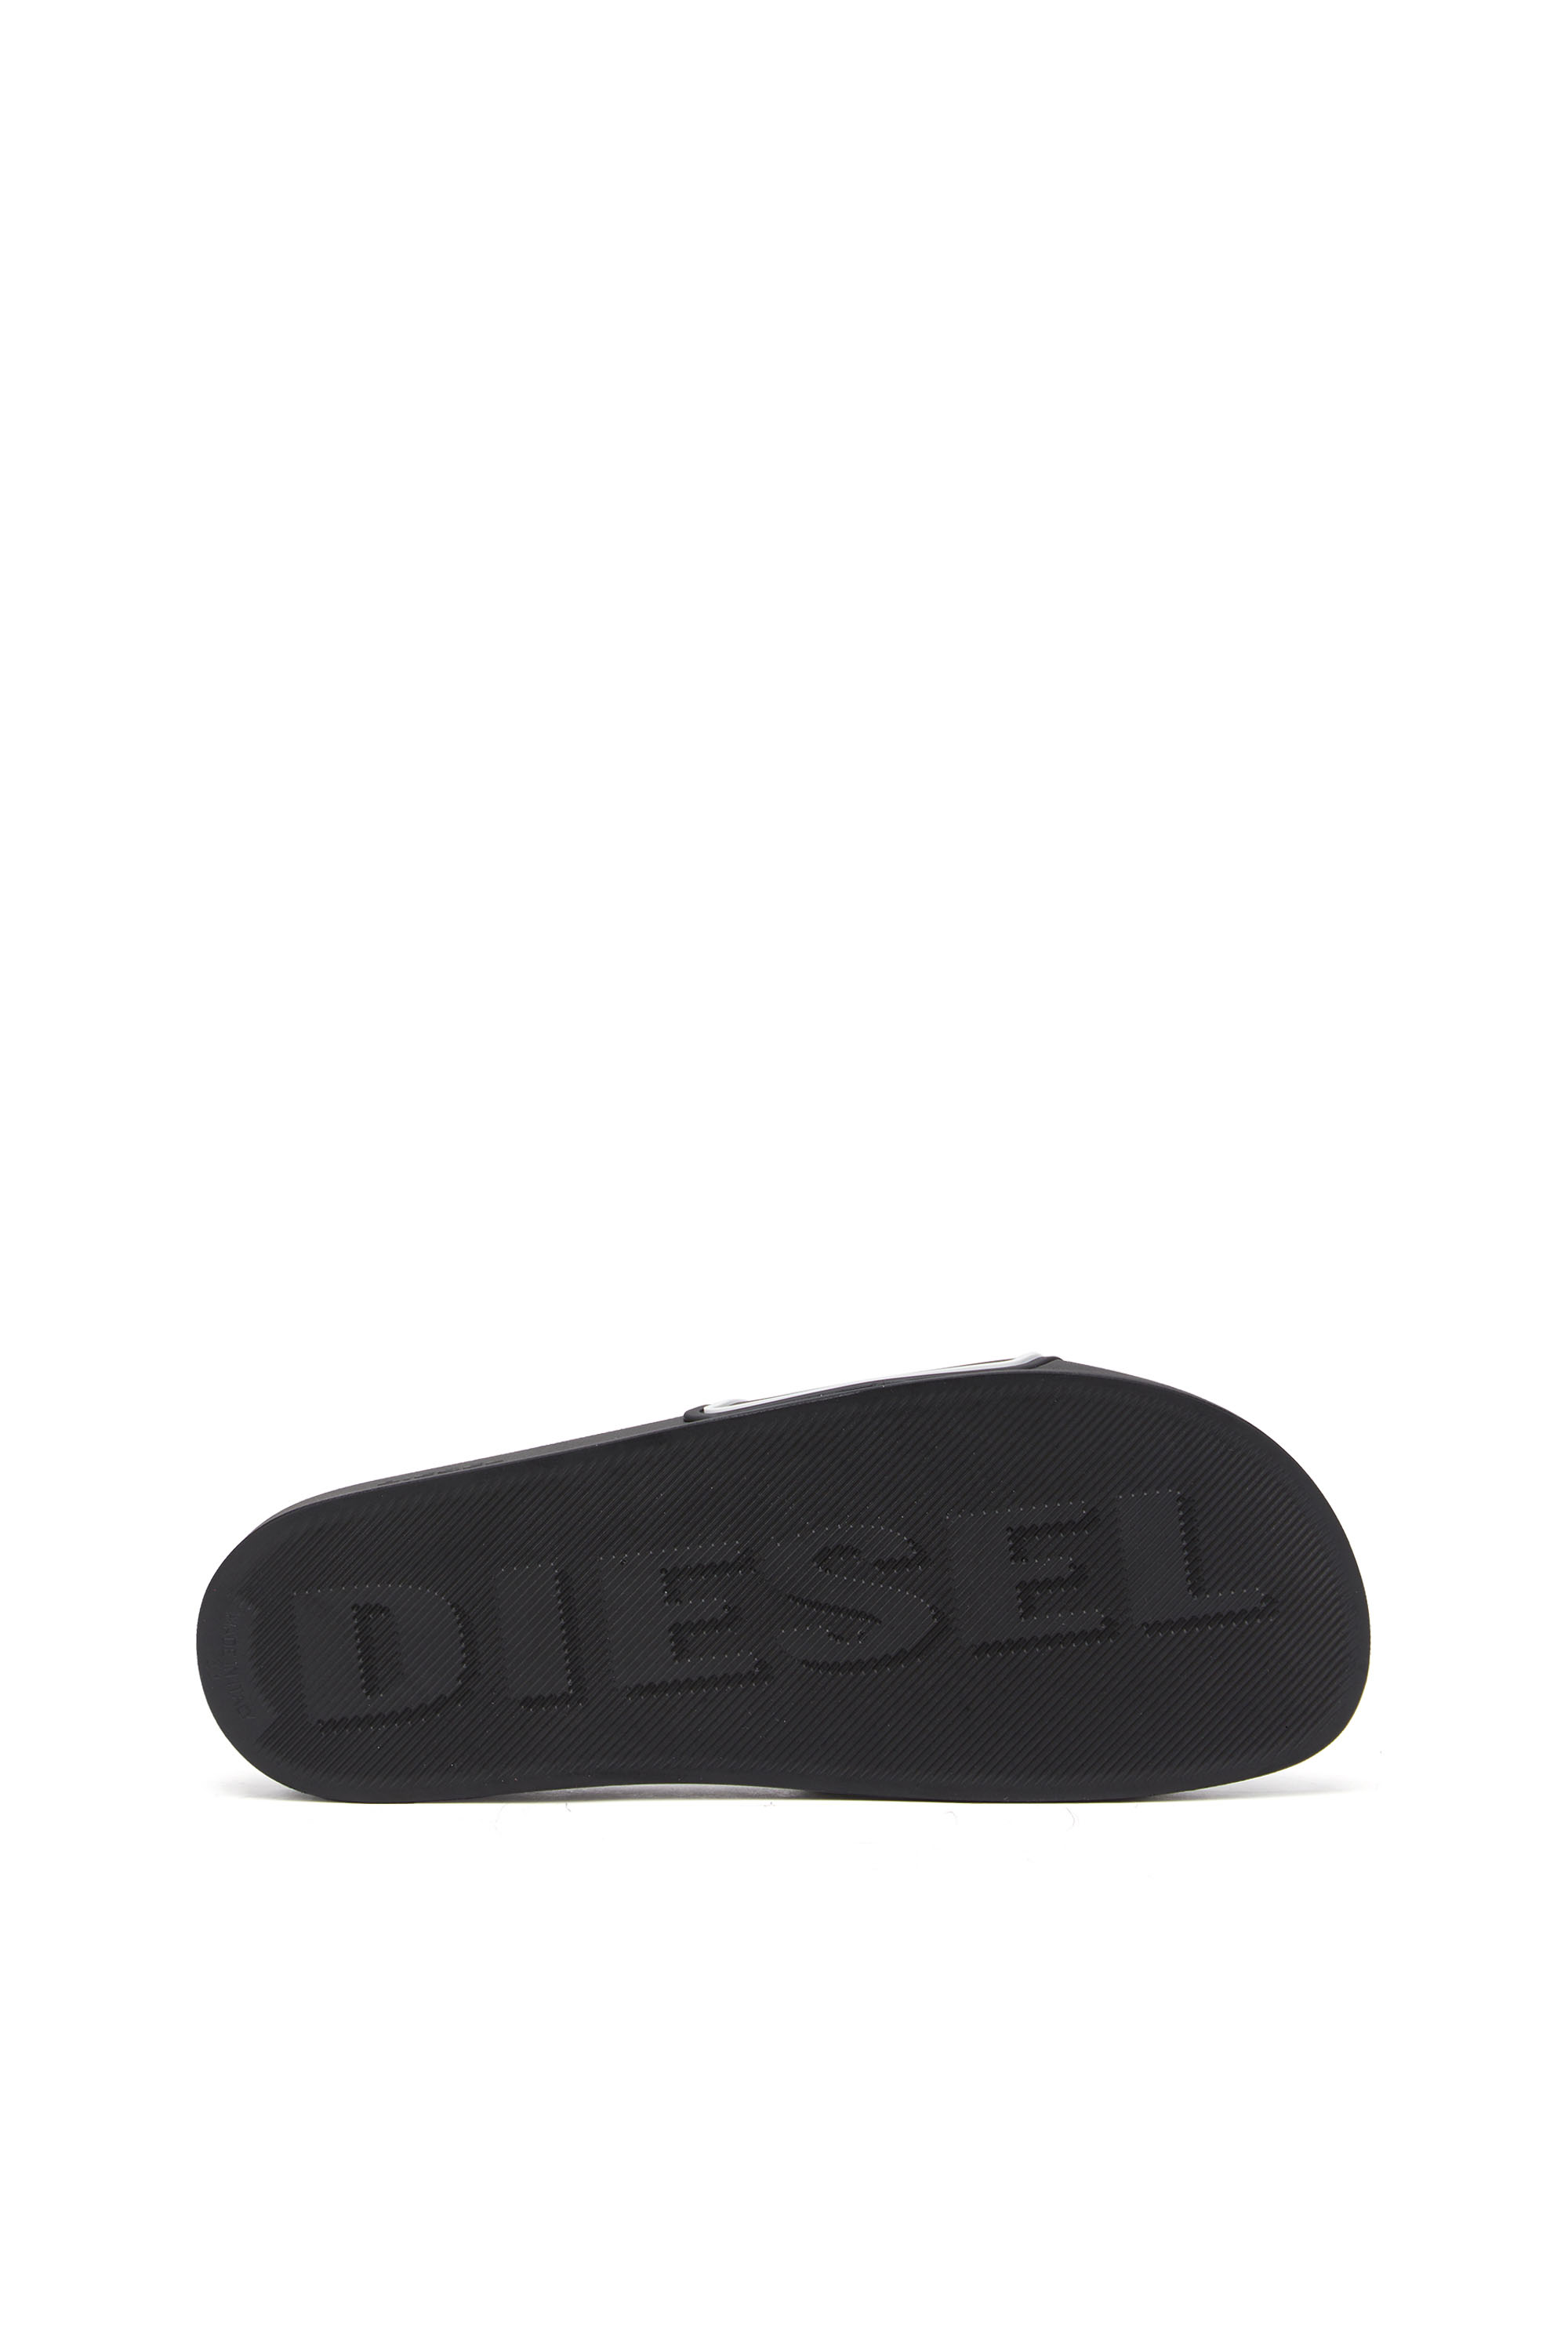 Diesel - SA-MAYEMI CC, Black/White - Image 4